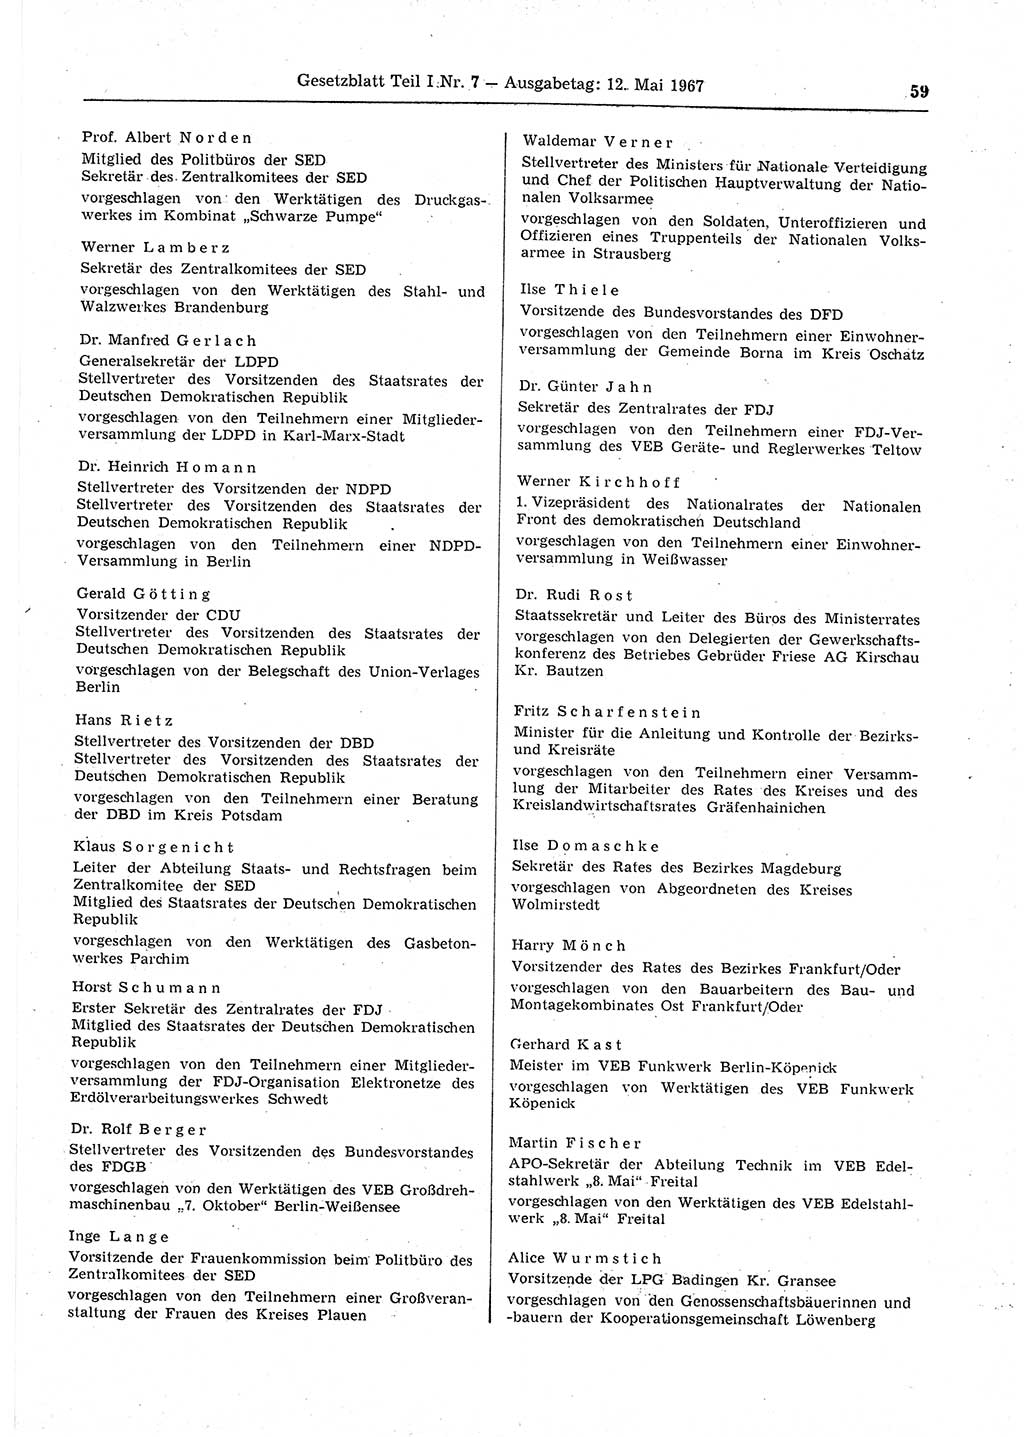 Gesetzblatt (GBl.) der Deutschen Demokratischen Republik (DDR) Teil Ⅰ 1967, Seite 59 (GBl. DDR Ⅰ 1967, S. 59)